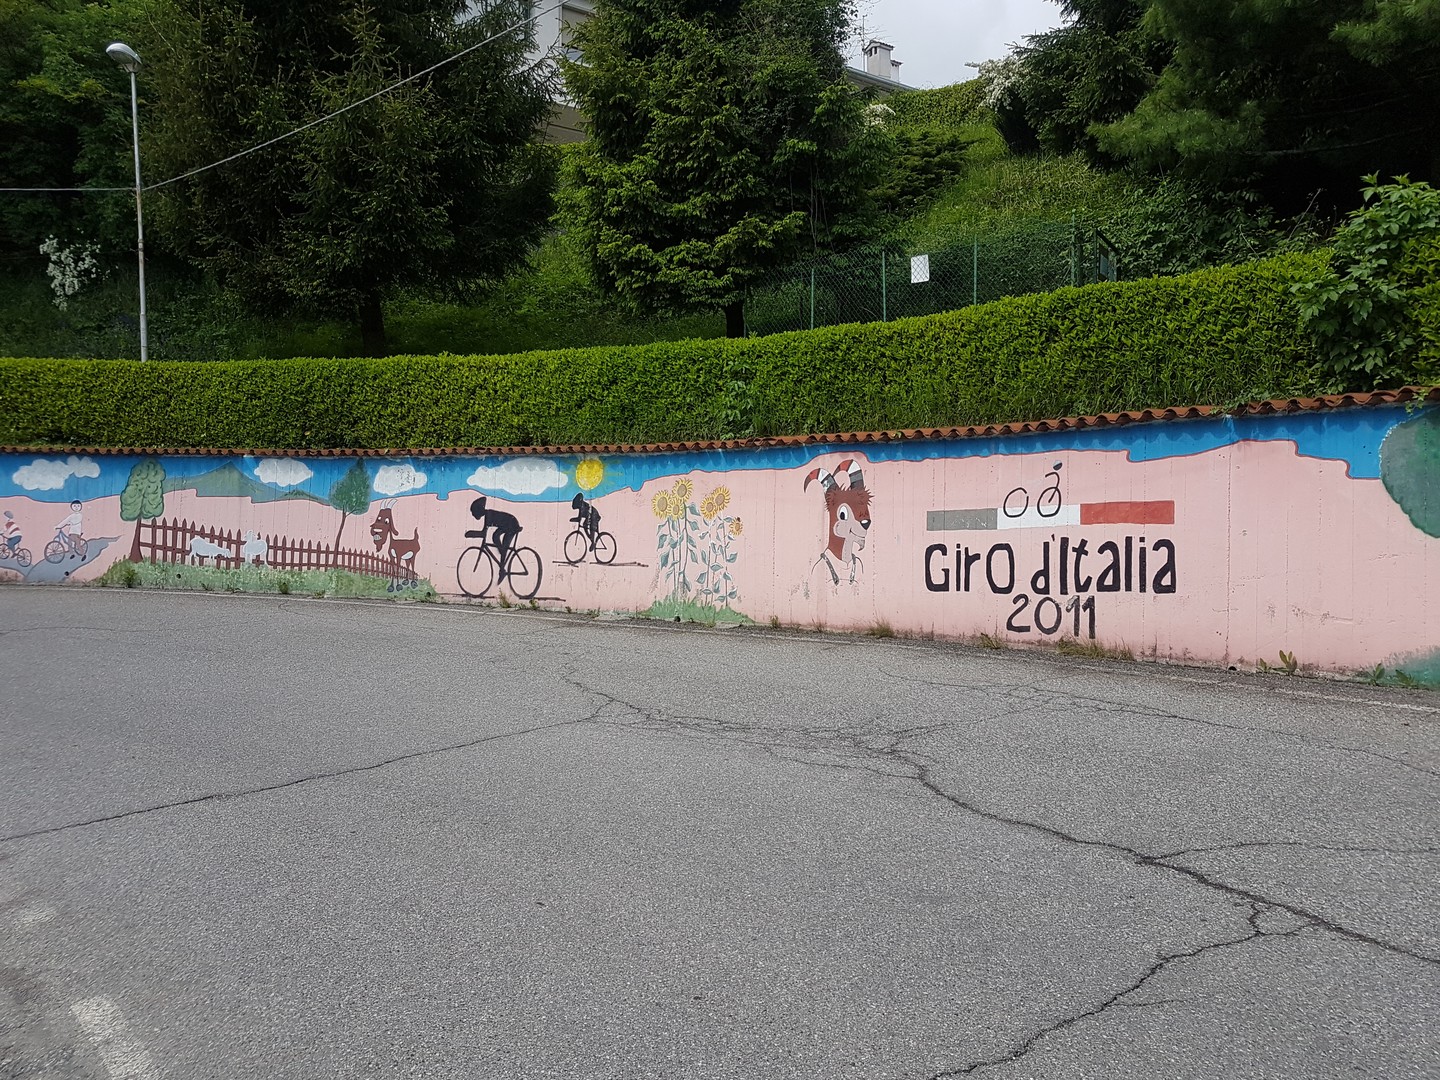 Der Giro 2011 ist immer noch an der Strecke präsent.